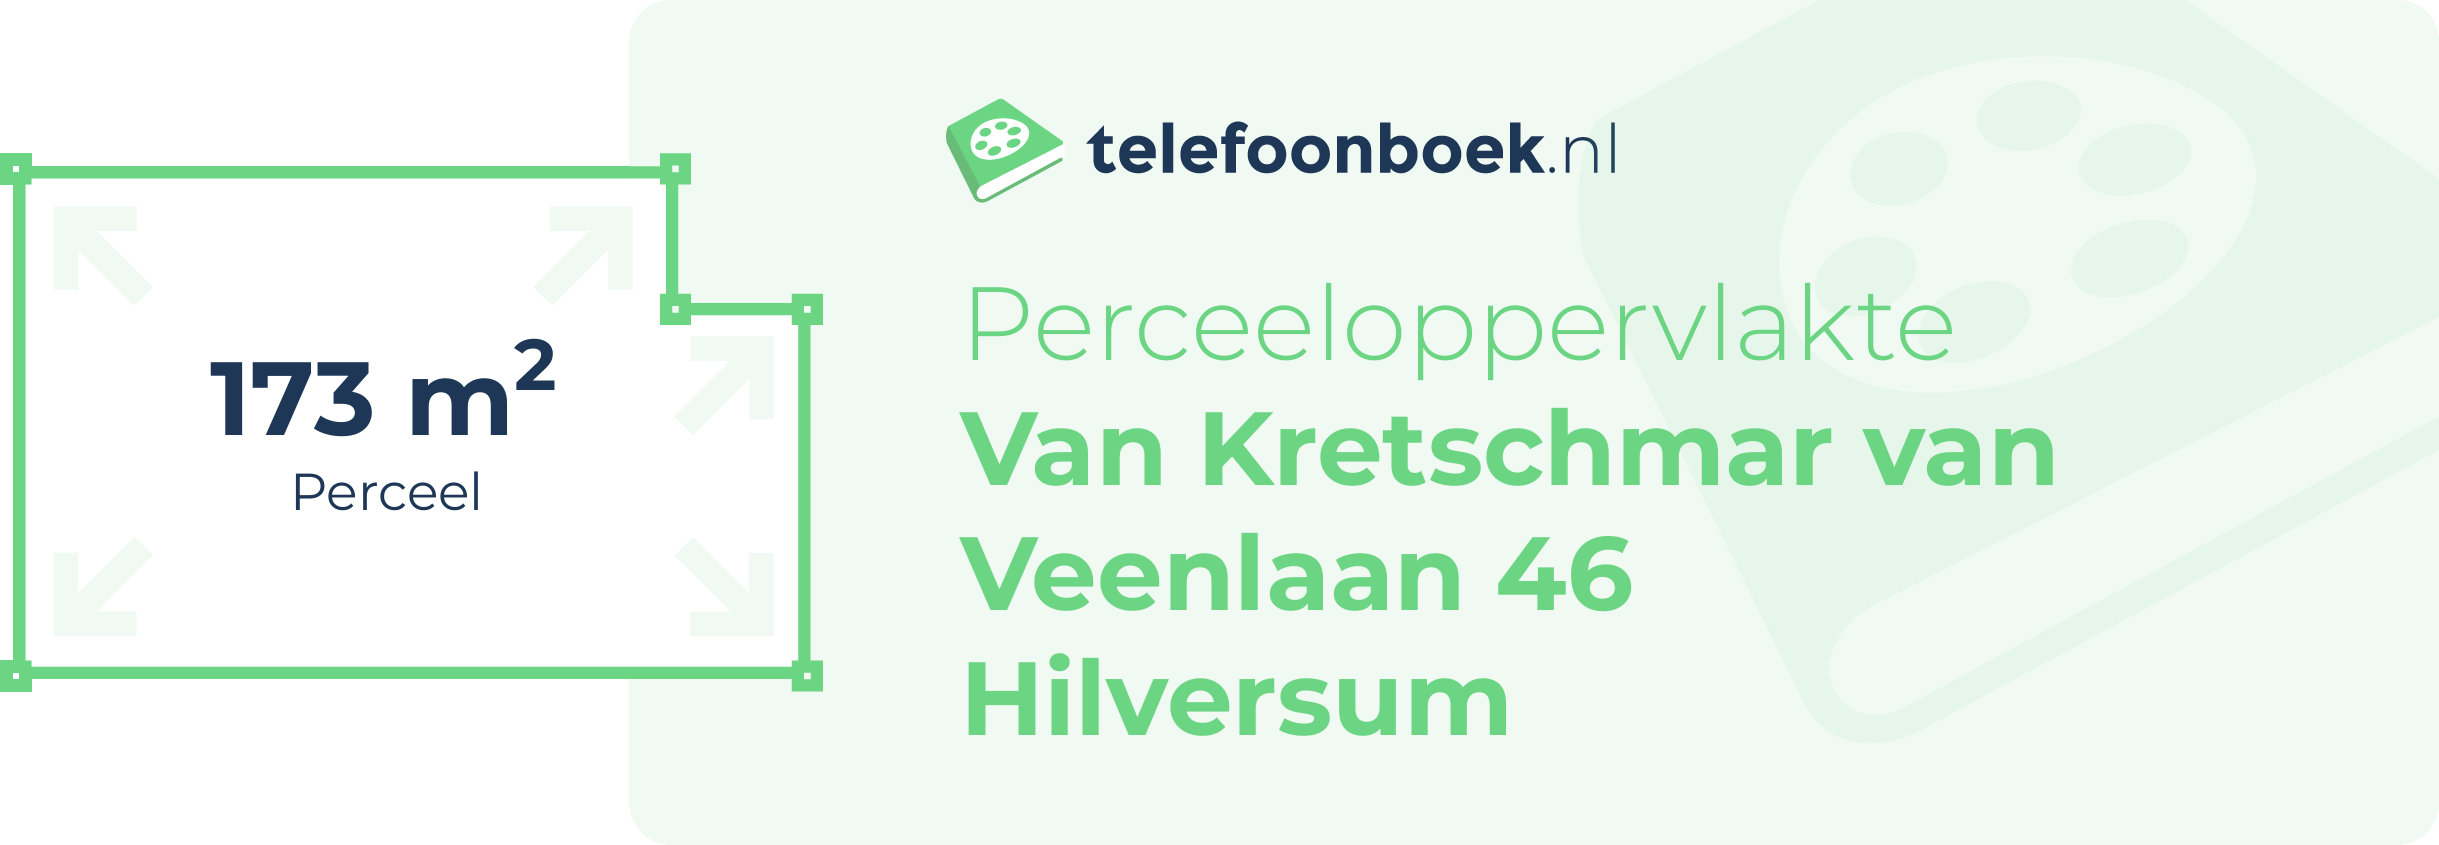 Perceeloppervlakte Van Kretschmar Van Veenlaan 46 Hilversum